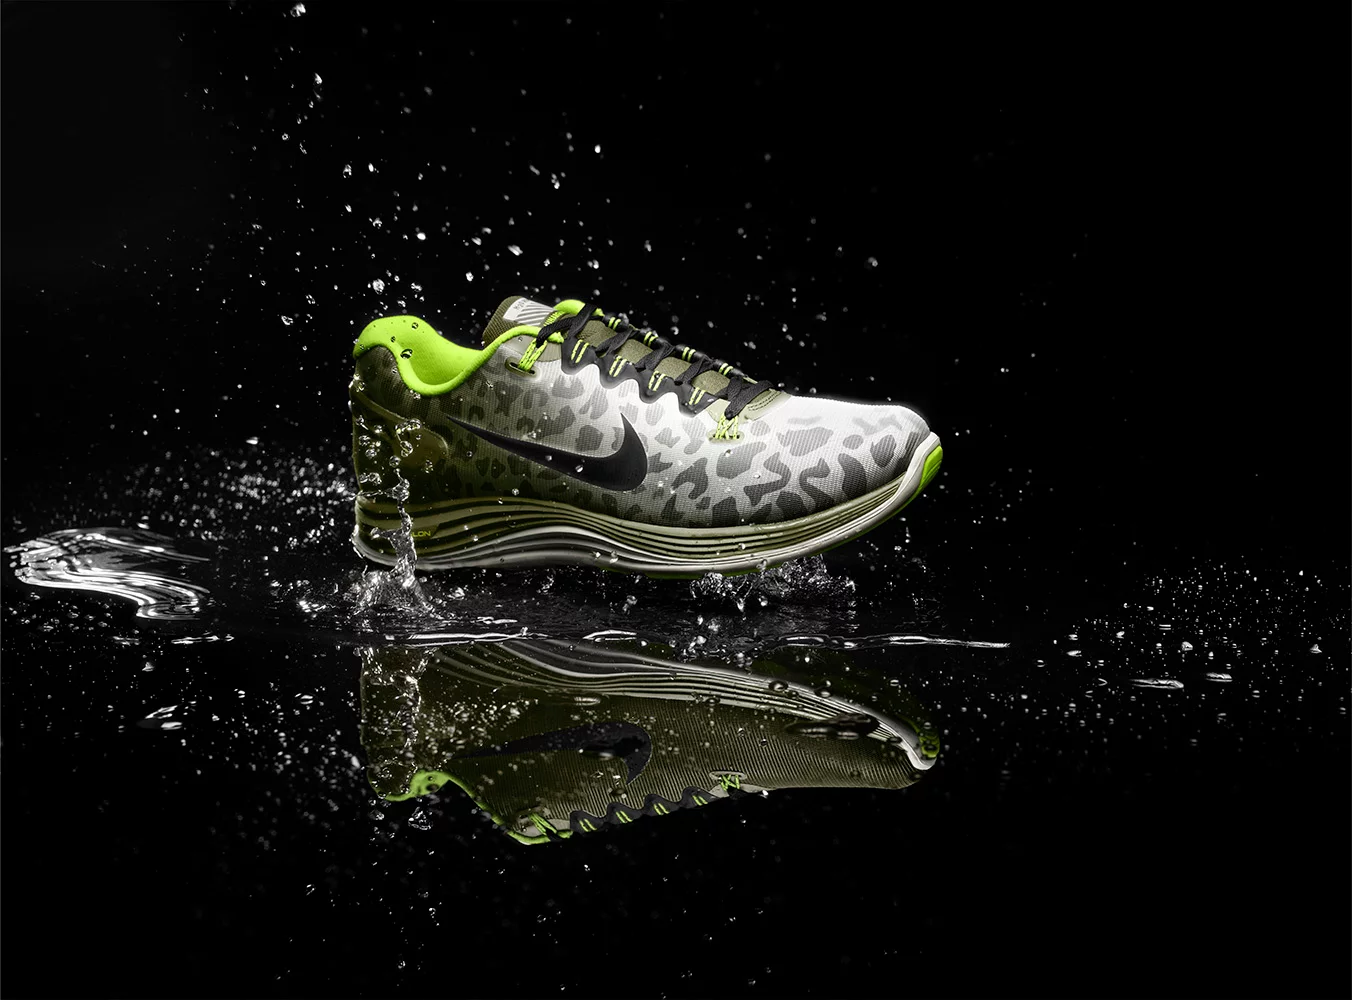 Nike Sportwear Campaign 1 by Marcus GAAB